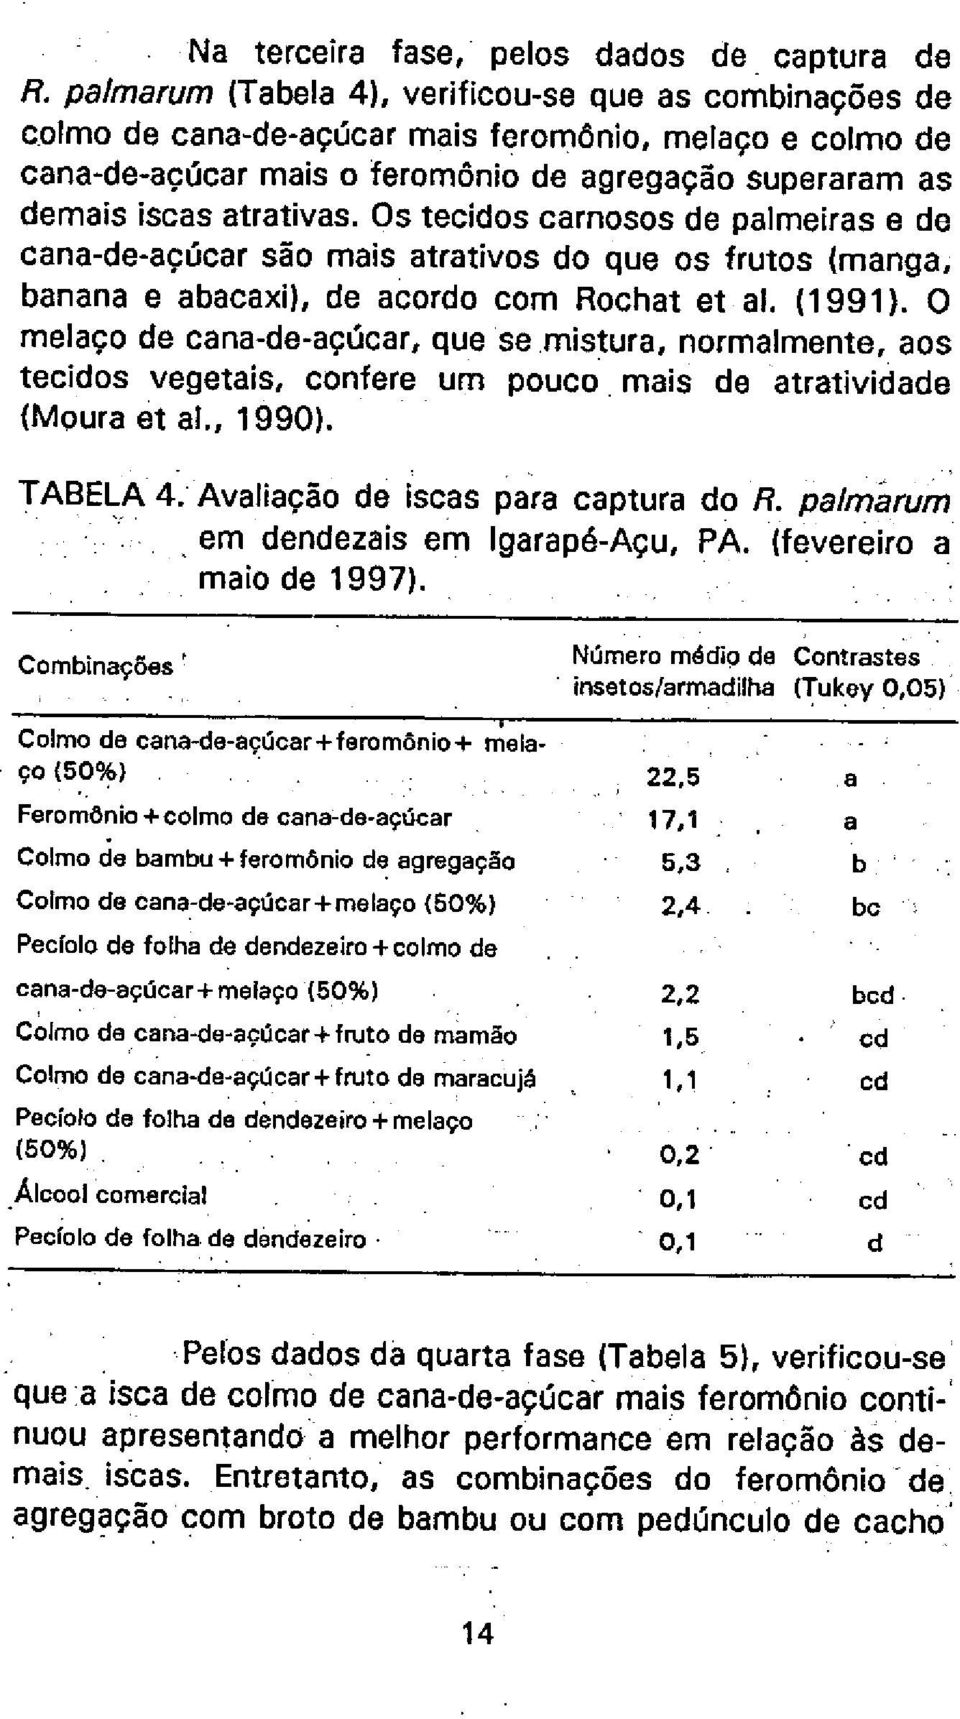 Os tecidos carnosos de palmeiras e de cana-de-açúcar são mais atrativos do que os frutos (manga, banana e abacaxi), de acordo com Rochat et ai. (1991).